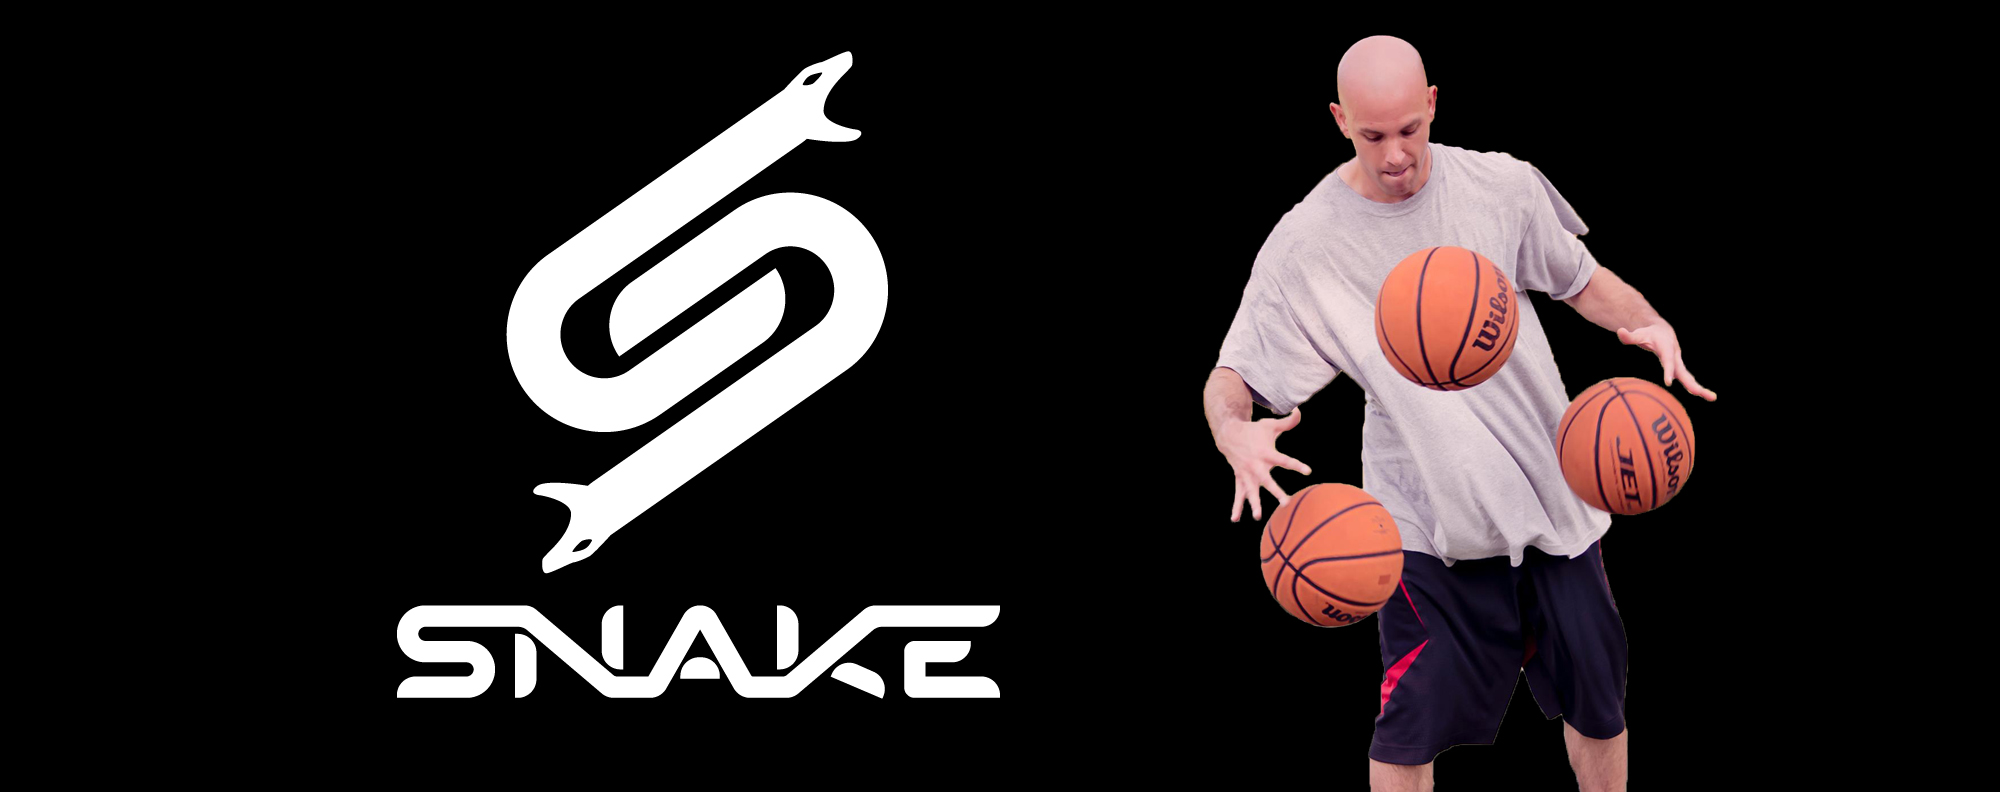 Snake – Basketball Ball Handling Trainer, Entertainer, and Motivational Speaker